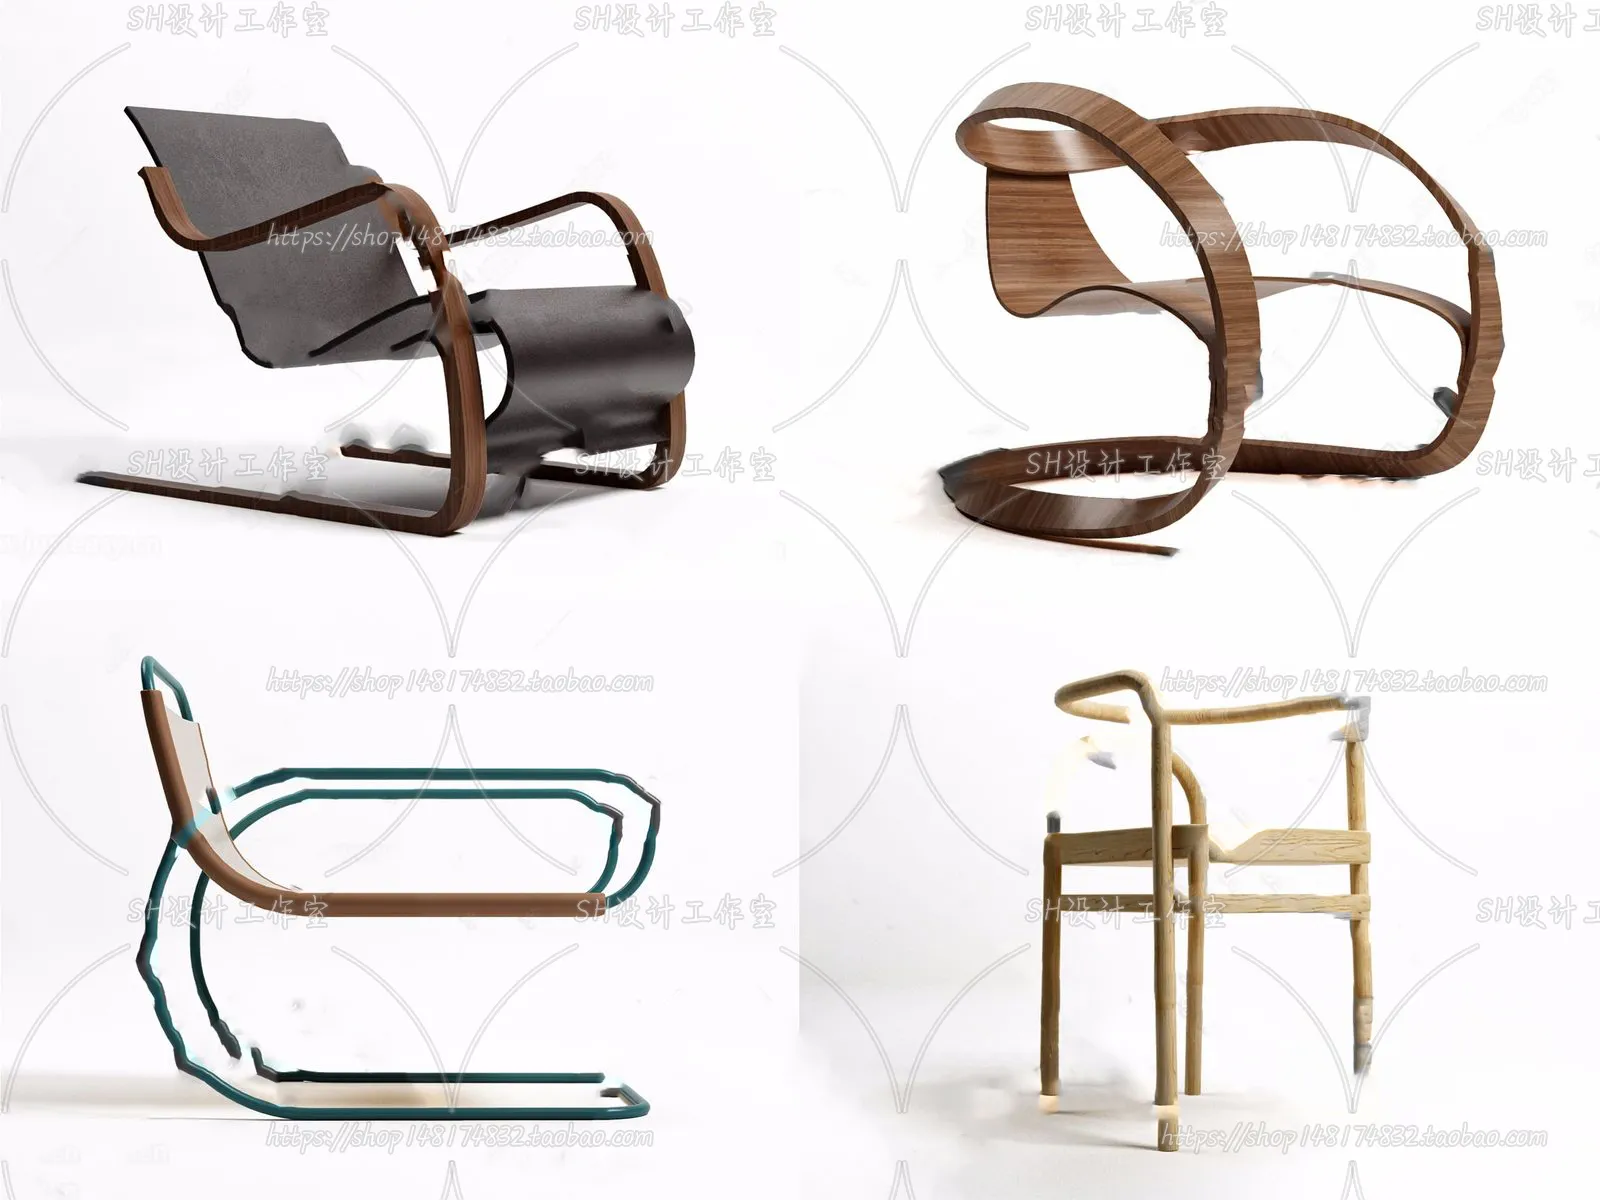 Chair – Single Chair 3D Models – 2026